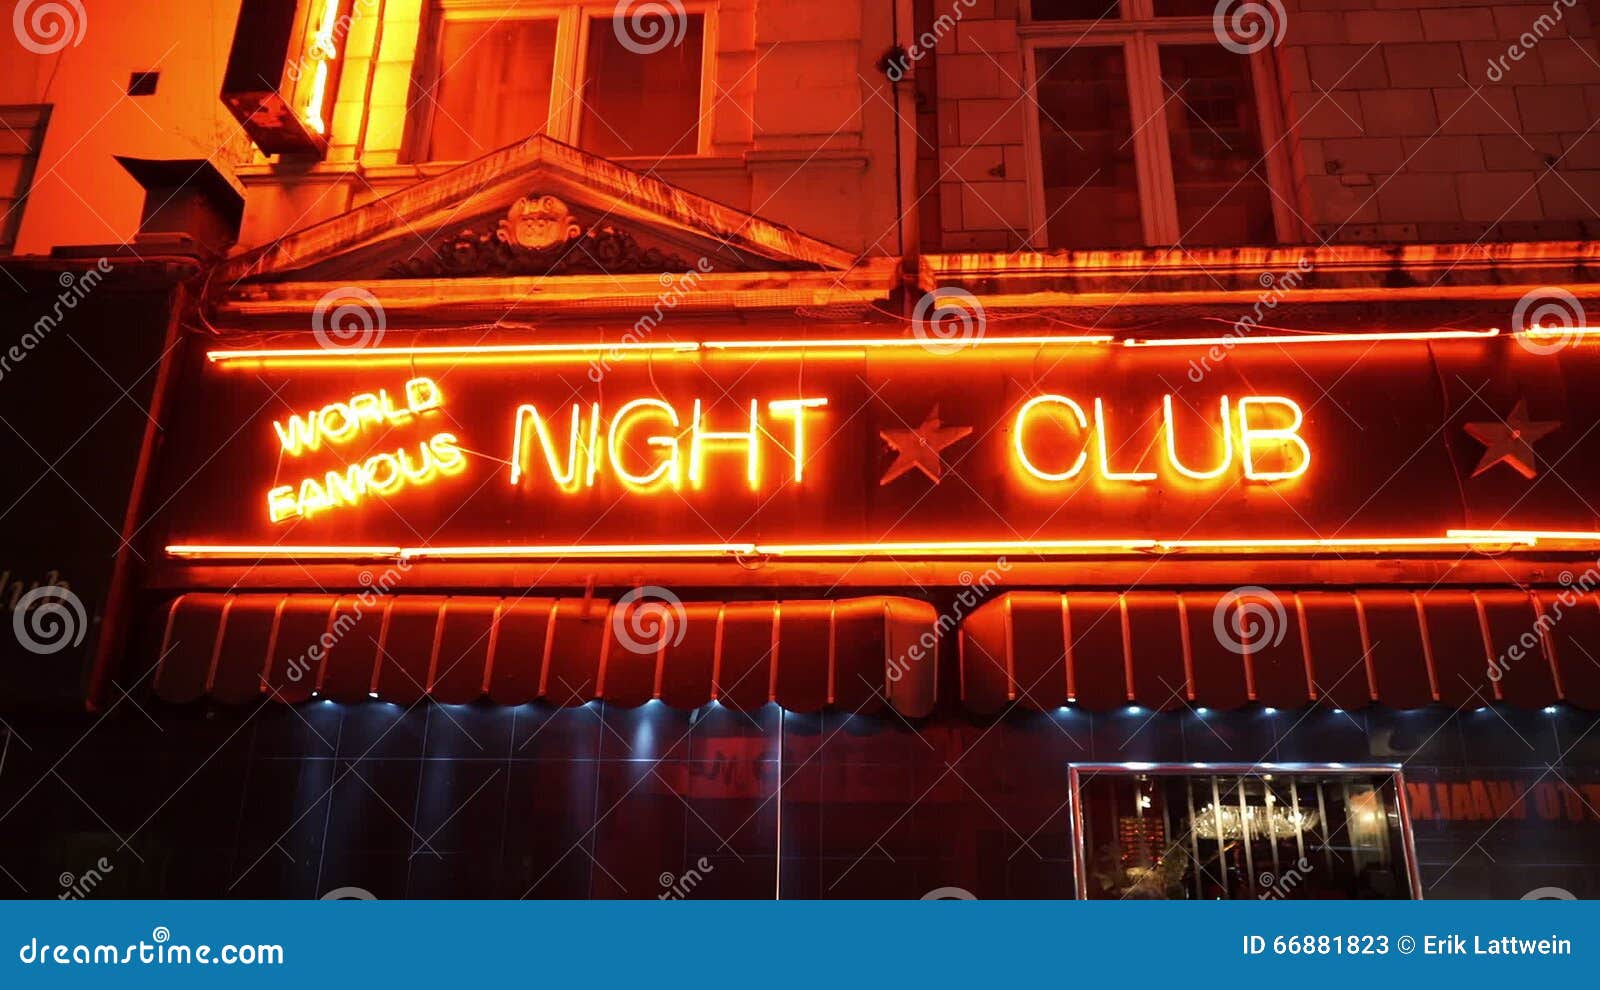 Есть слово клуб. Клуб вывеска. Ночной клуб вывеска. Неоновая вывеска Night Club. Неон вывеска ночной клуб.